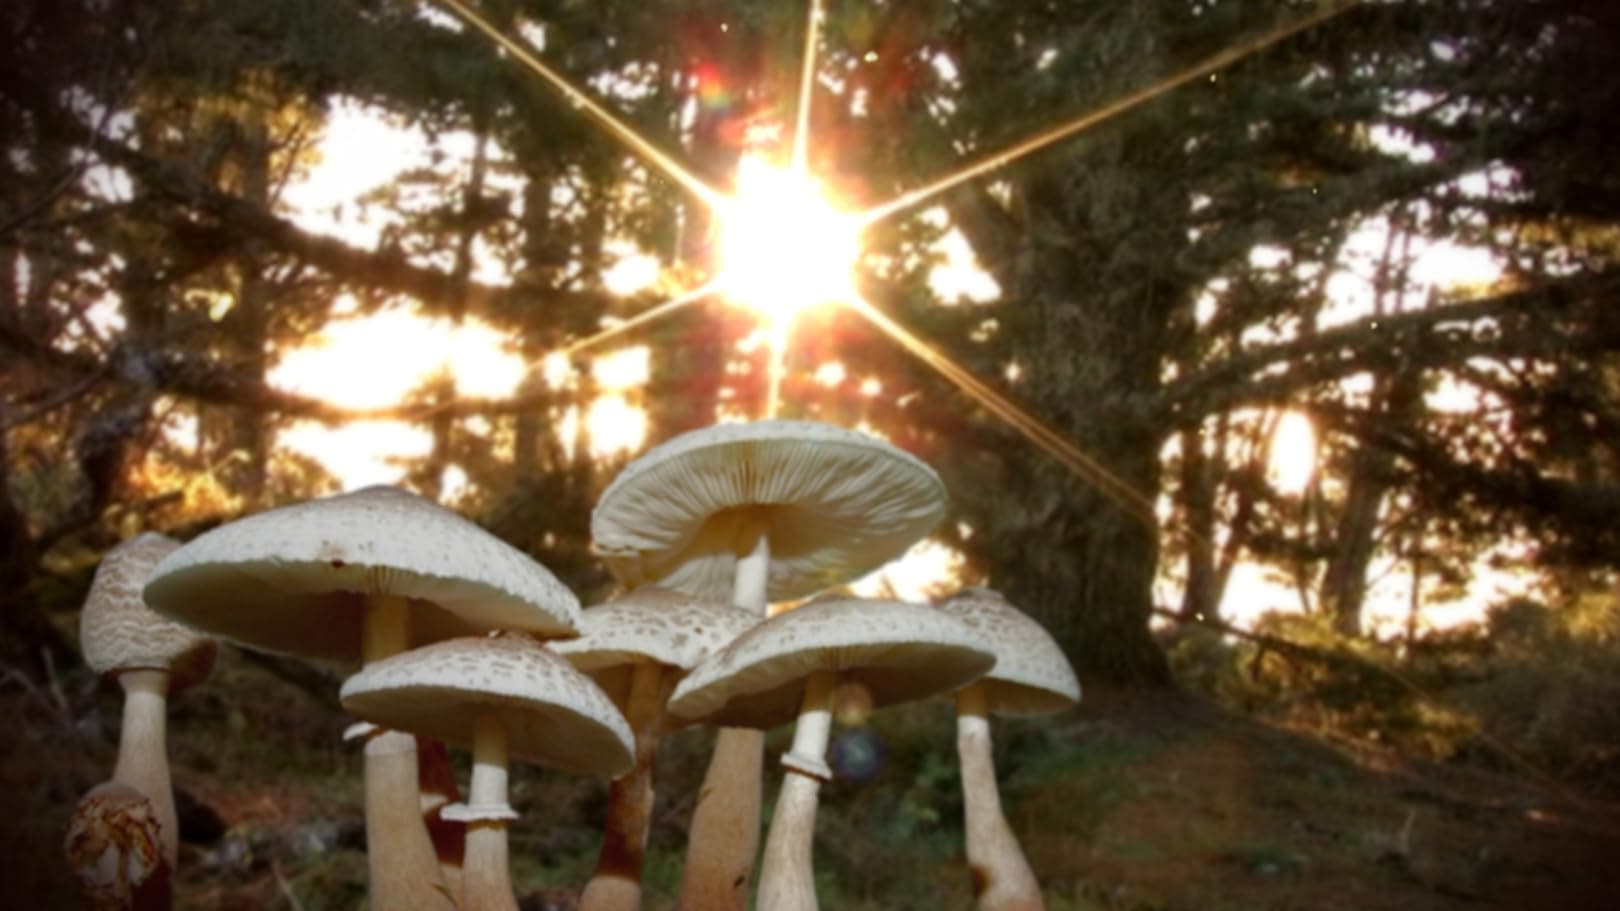 دانلود فیلم Know Your Mushrooms 2008